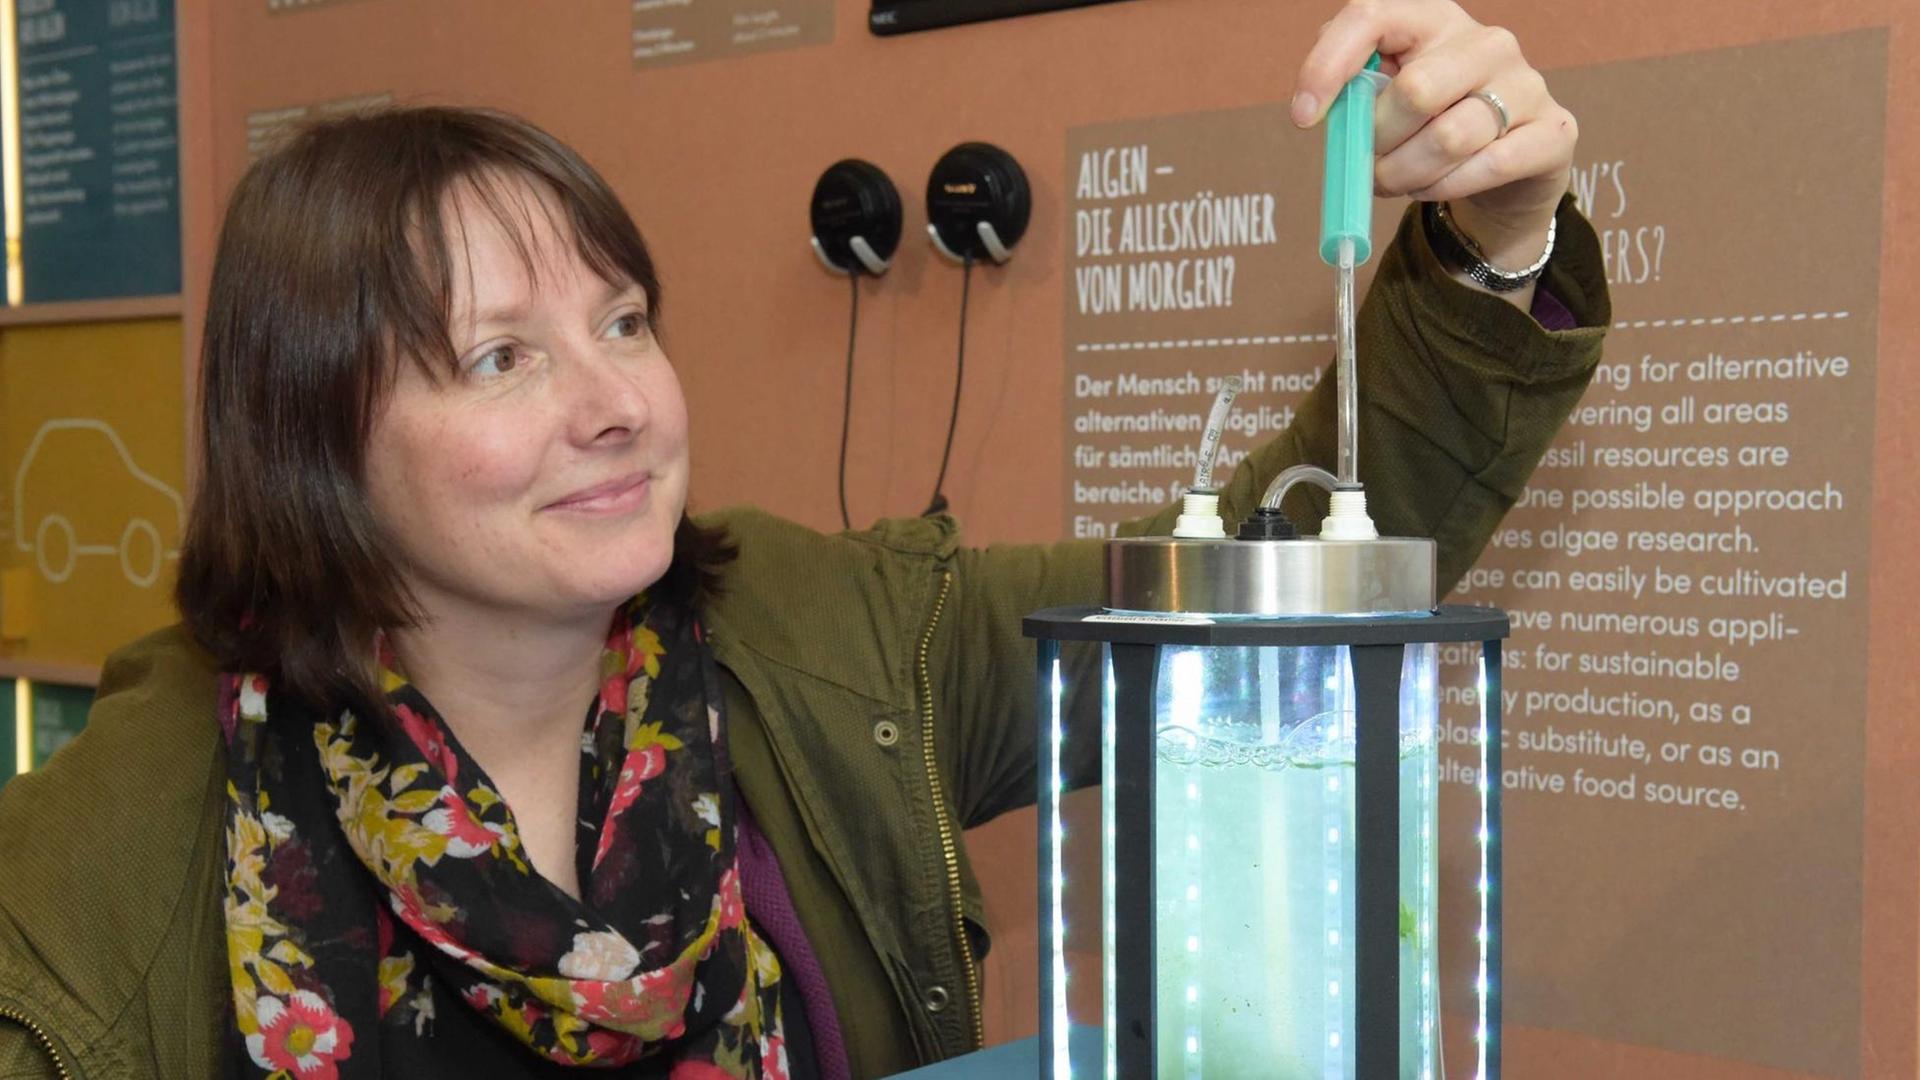 Eine Frau bedient einen kleinen Reaktor, der Mikroalgen produziert. Zu sehen ist er in der Ausstellung "Zukunft gestalten - Wie wollen wir leben?"